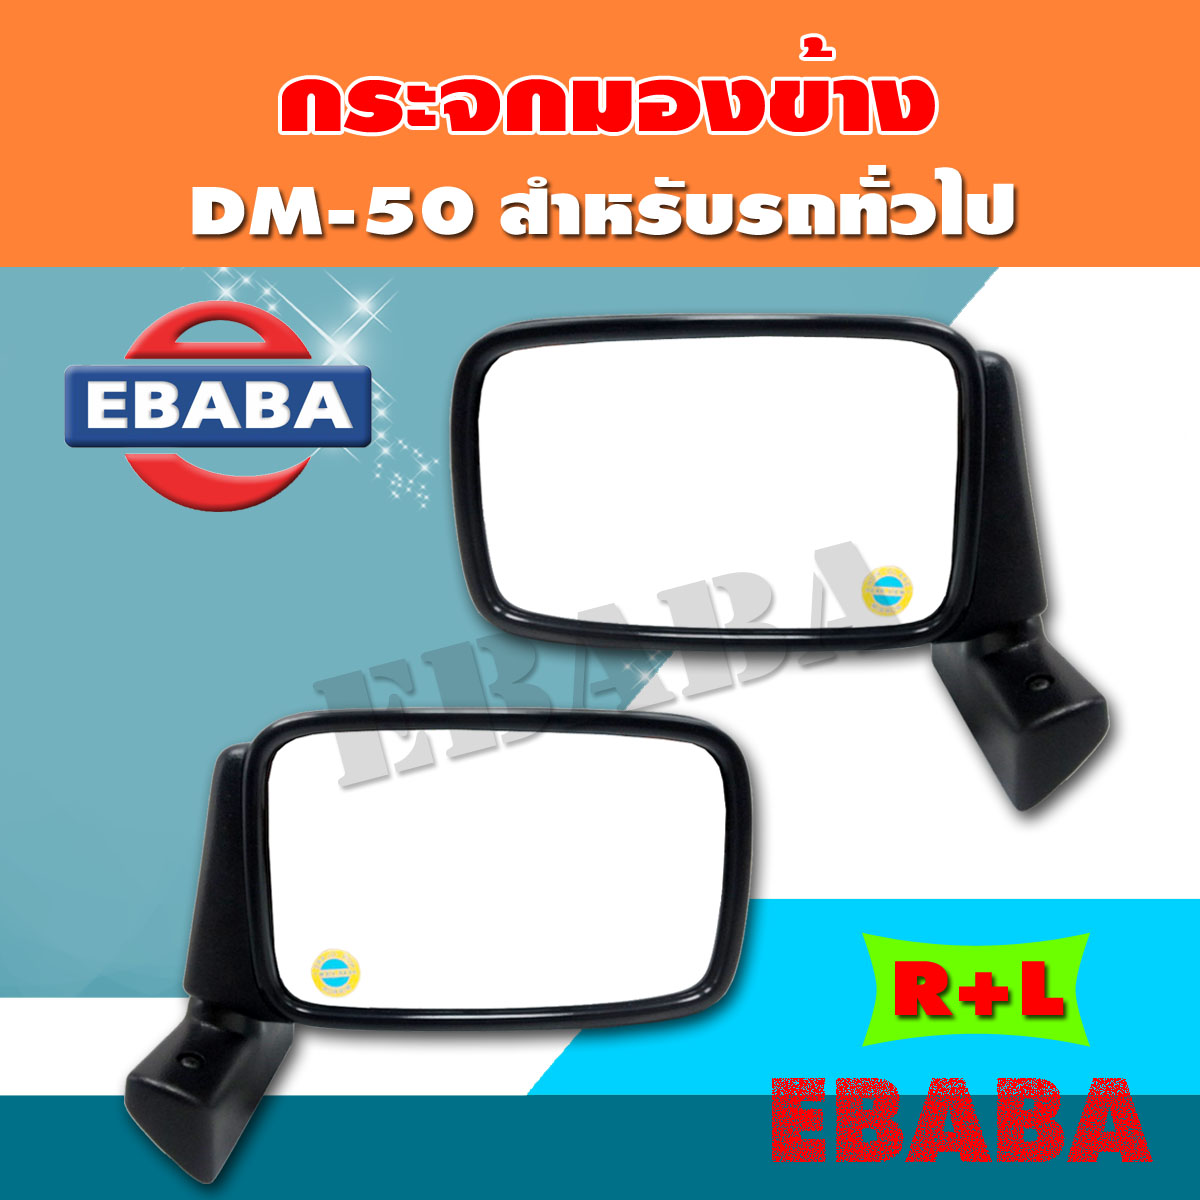 กระจกมองข้าง สำหรับ รถทั่วไป 1 คู่ ( ข้างซ้าย+ขวา ) DM-50